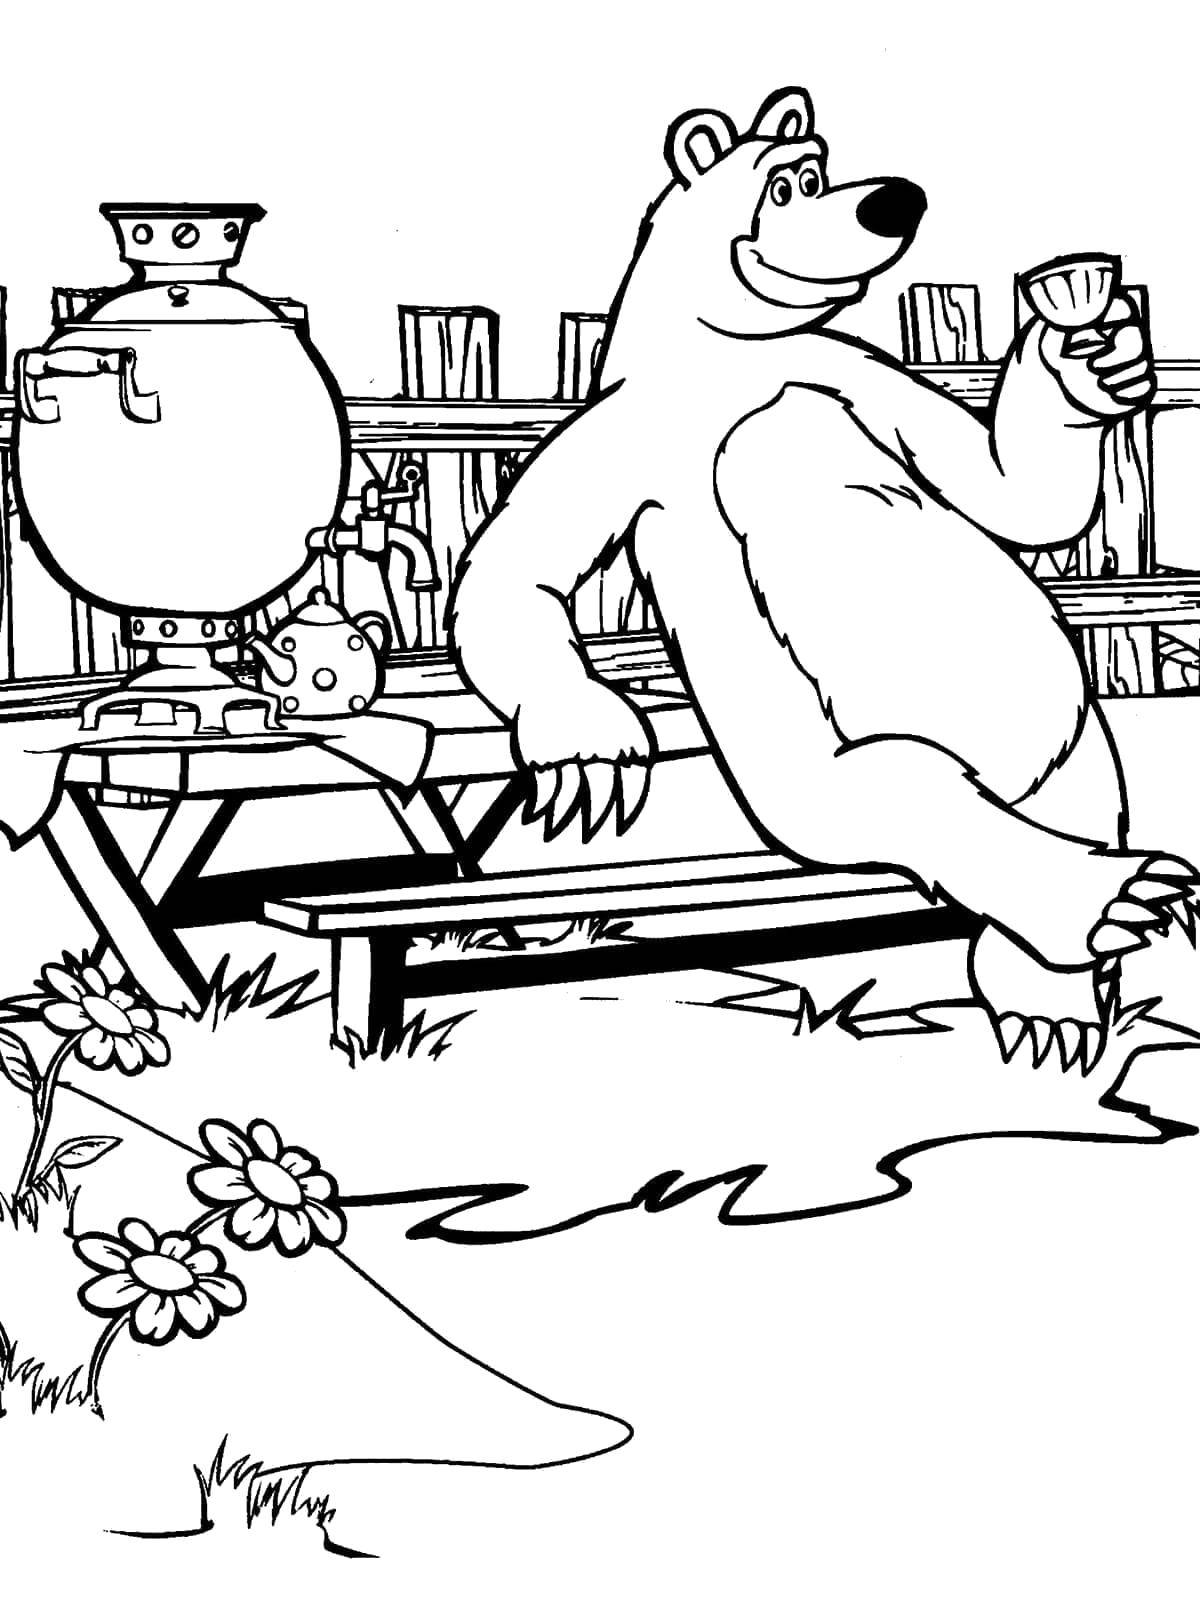 Раскраски для детей про озорную Машу из мультфильма Маша и медведь  Медведь пьет чай